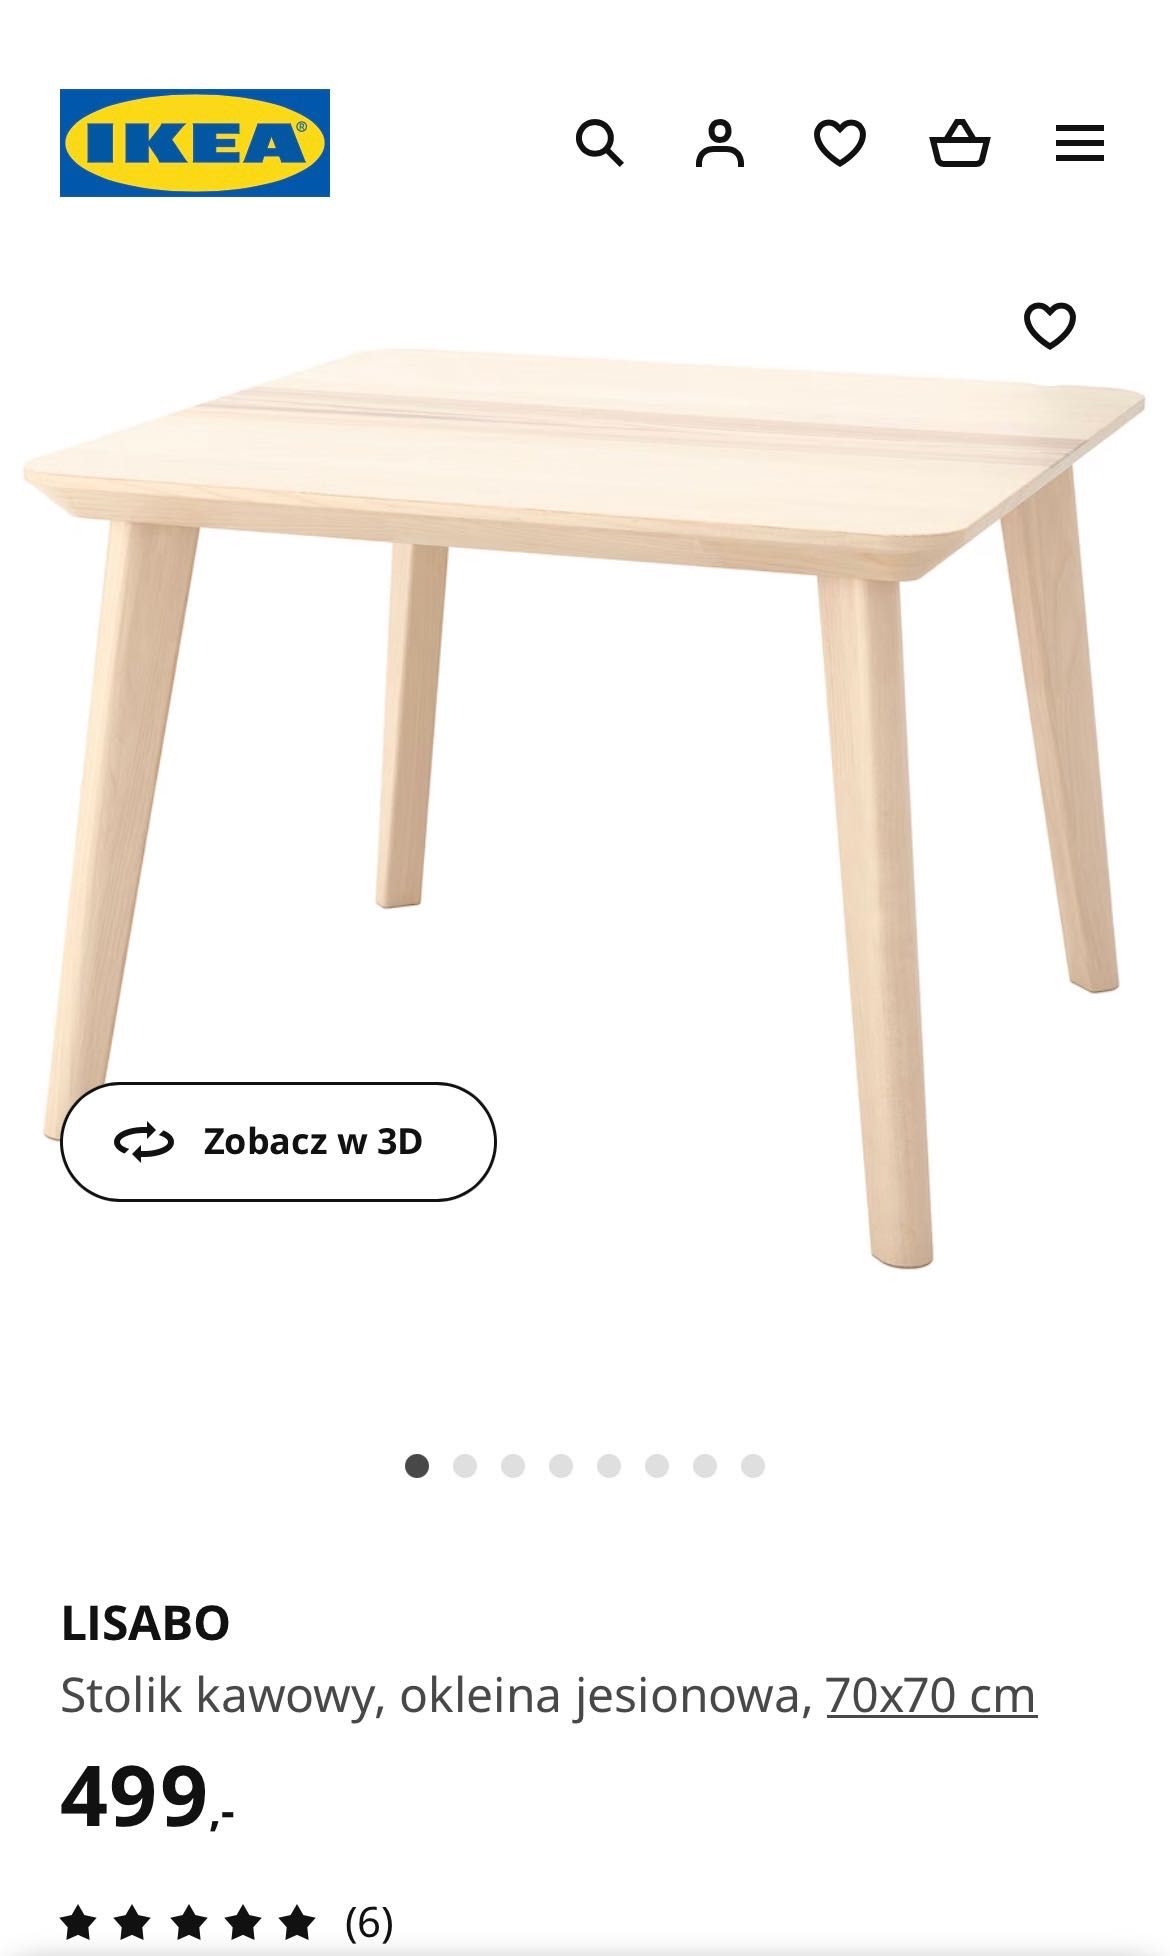 Stolik kawowy Ikea 70x70